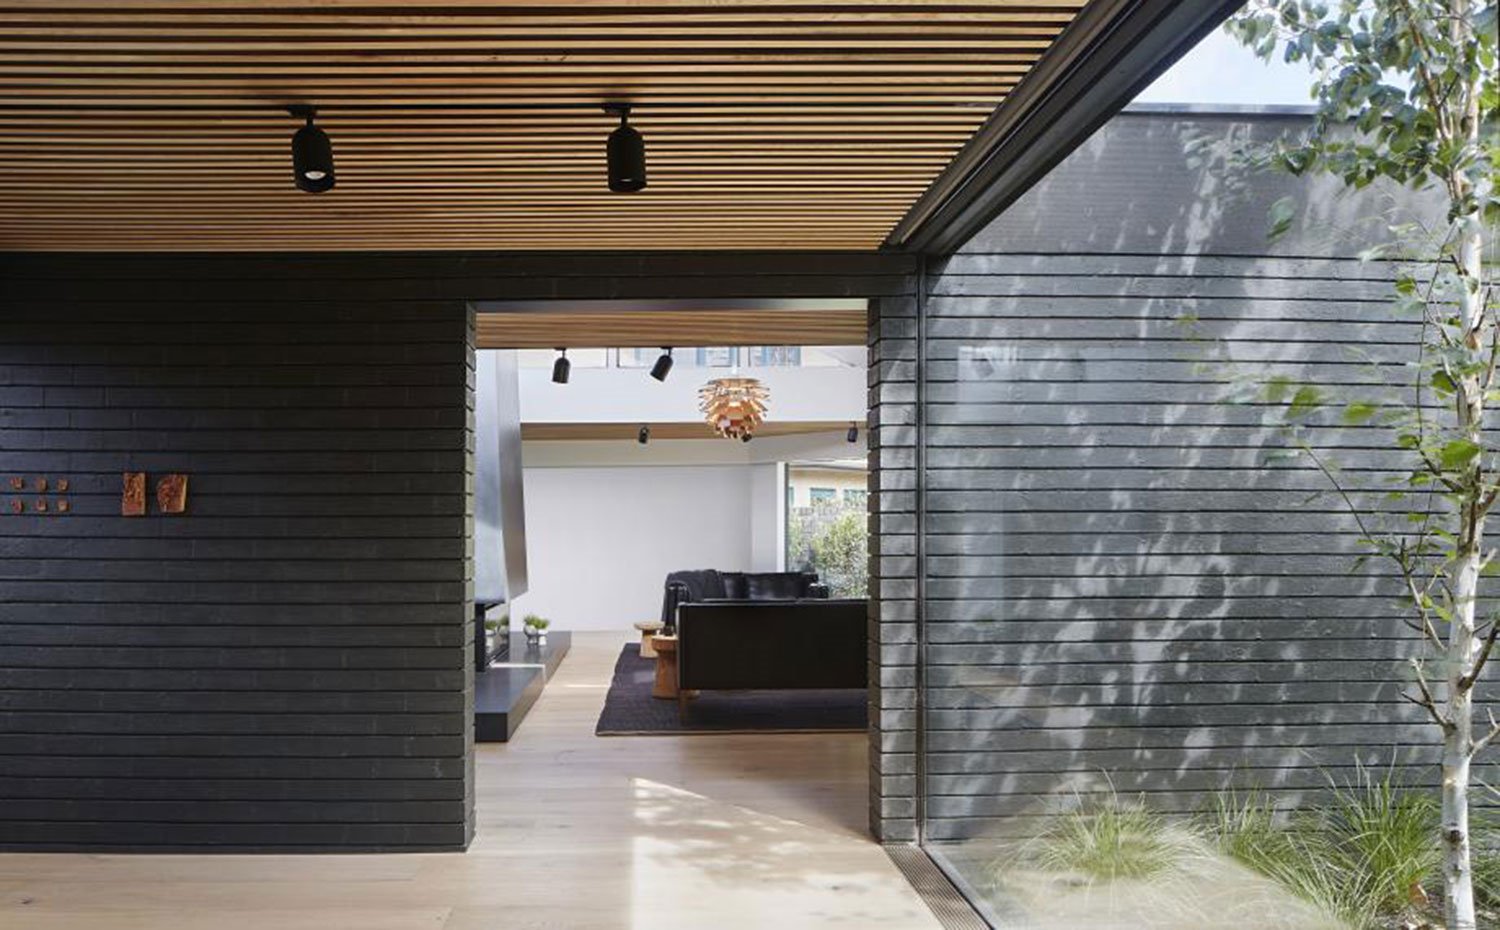 Interior vivienda con cerramiento acristalado y vistas a vegetación exterior, techo con listones de madera y focos en negro, salón con chimenea y sofás negros